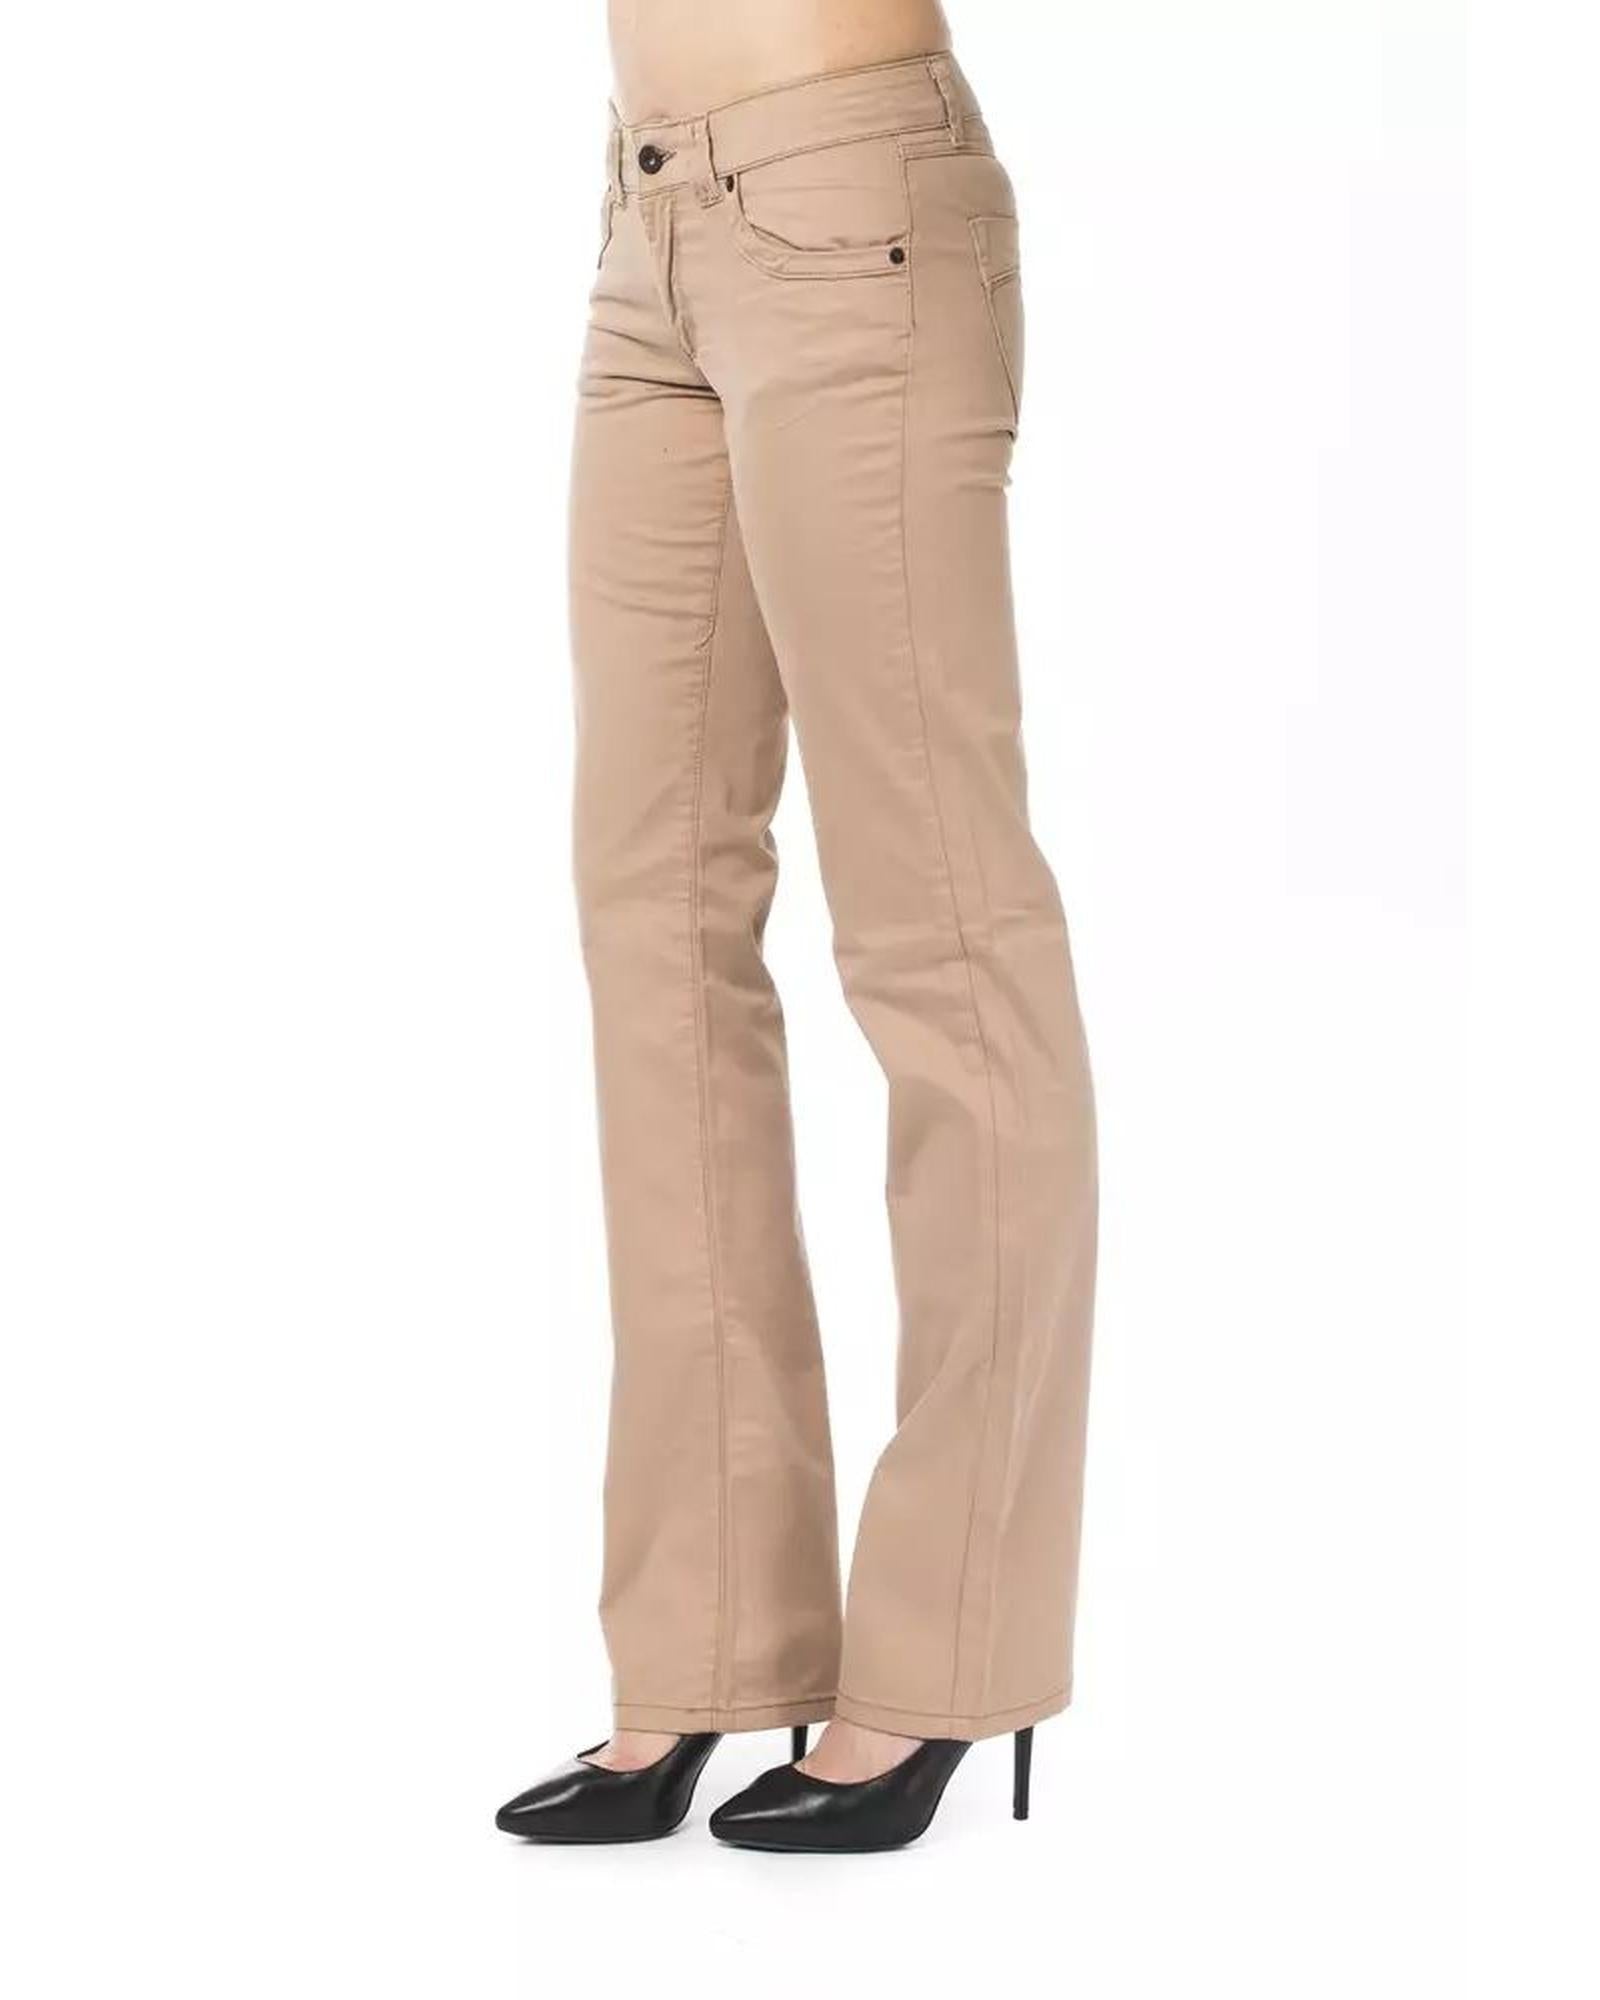 Women's Beige Cotton Jeans & Pant - W32 US